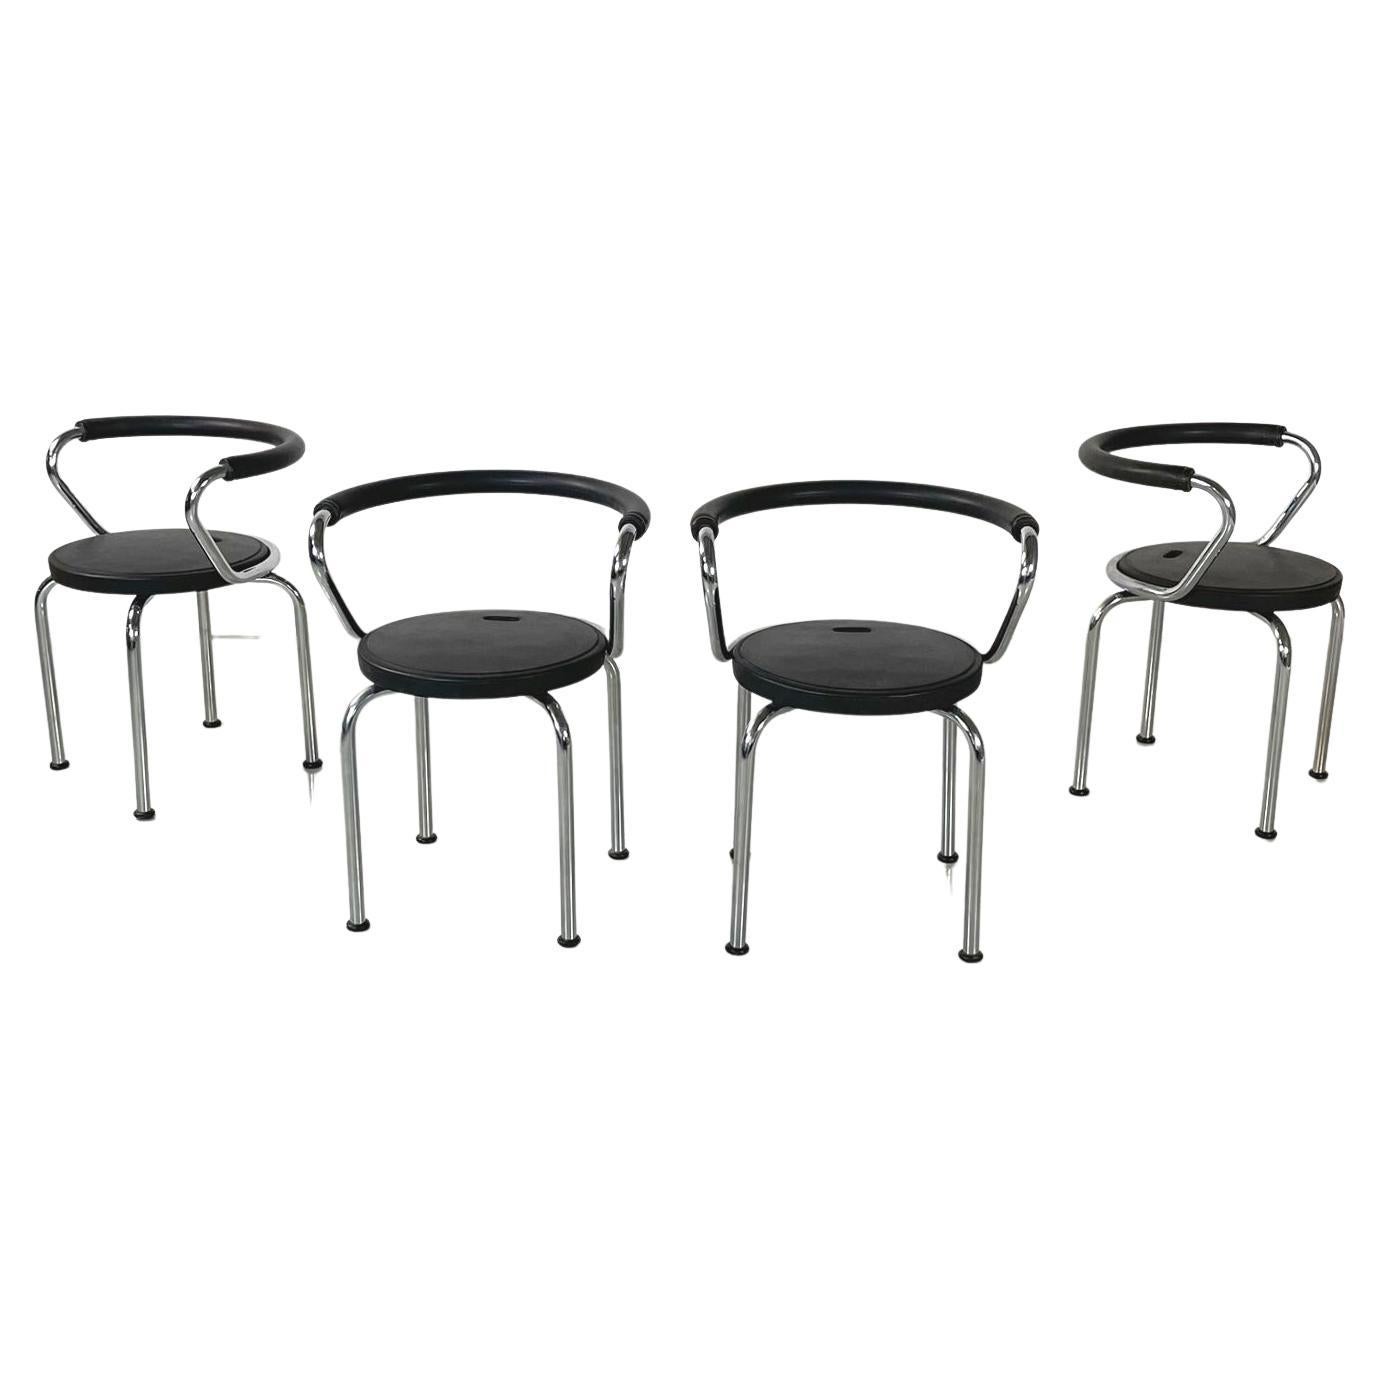 Moderne italienische Stühle aus schwarzem Gummi und Metall von Airon, 1980er Jahre